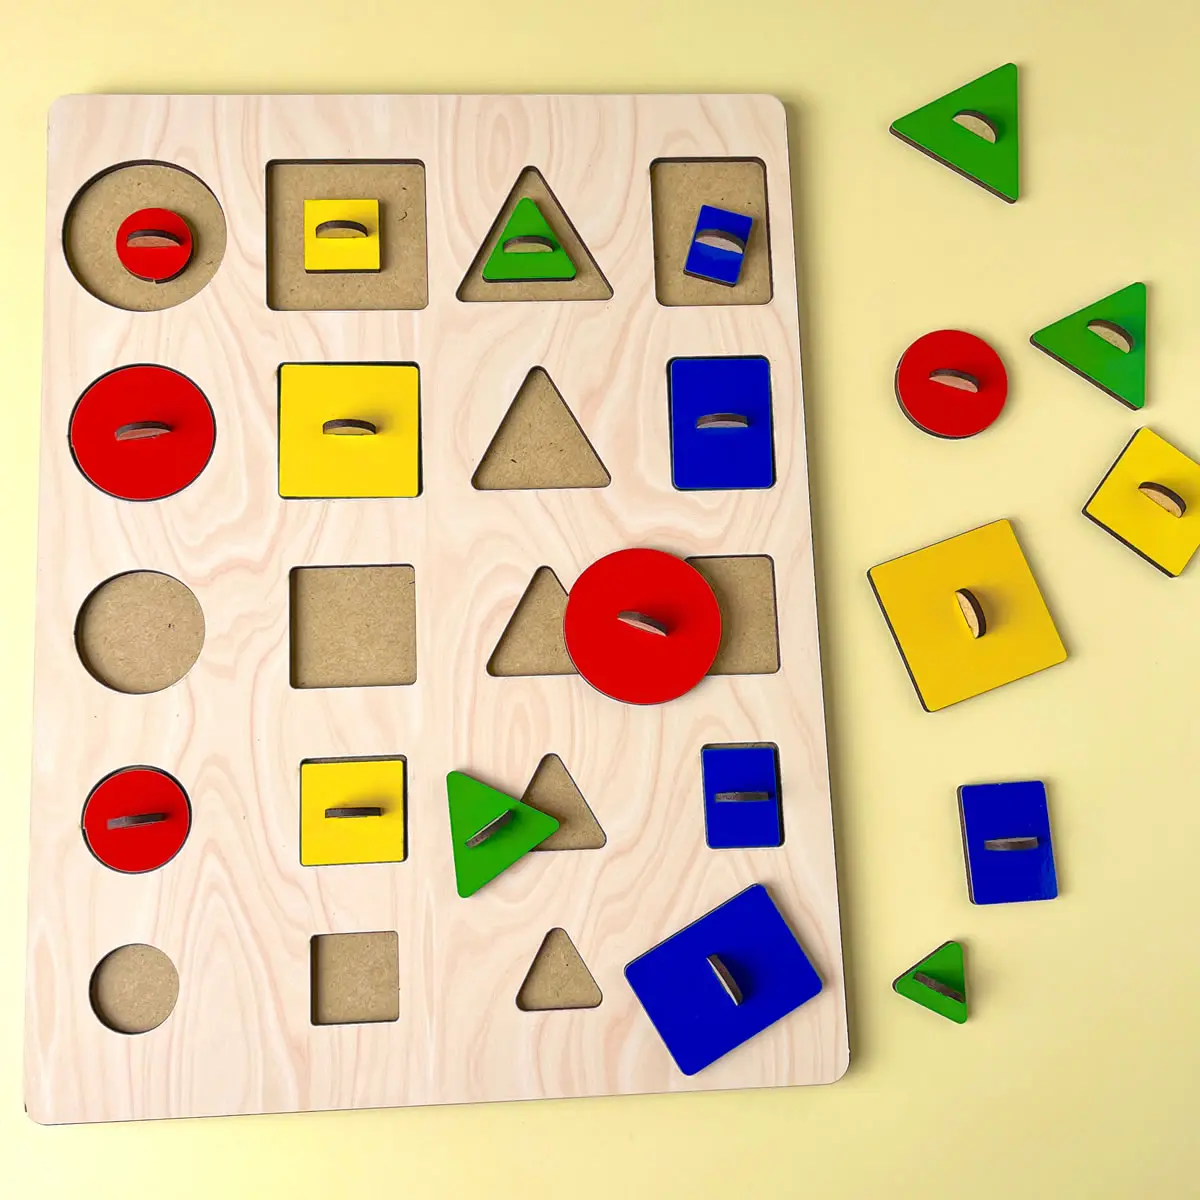 Дерев'яна рамка-вкладка Геометричні вкладки "Розміри". Розвиваюча гра для дітей